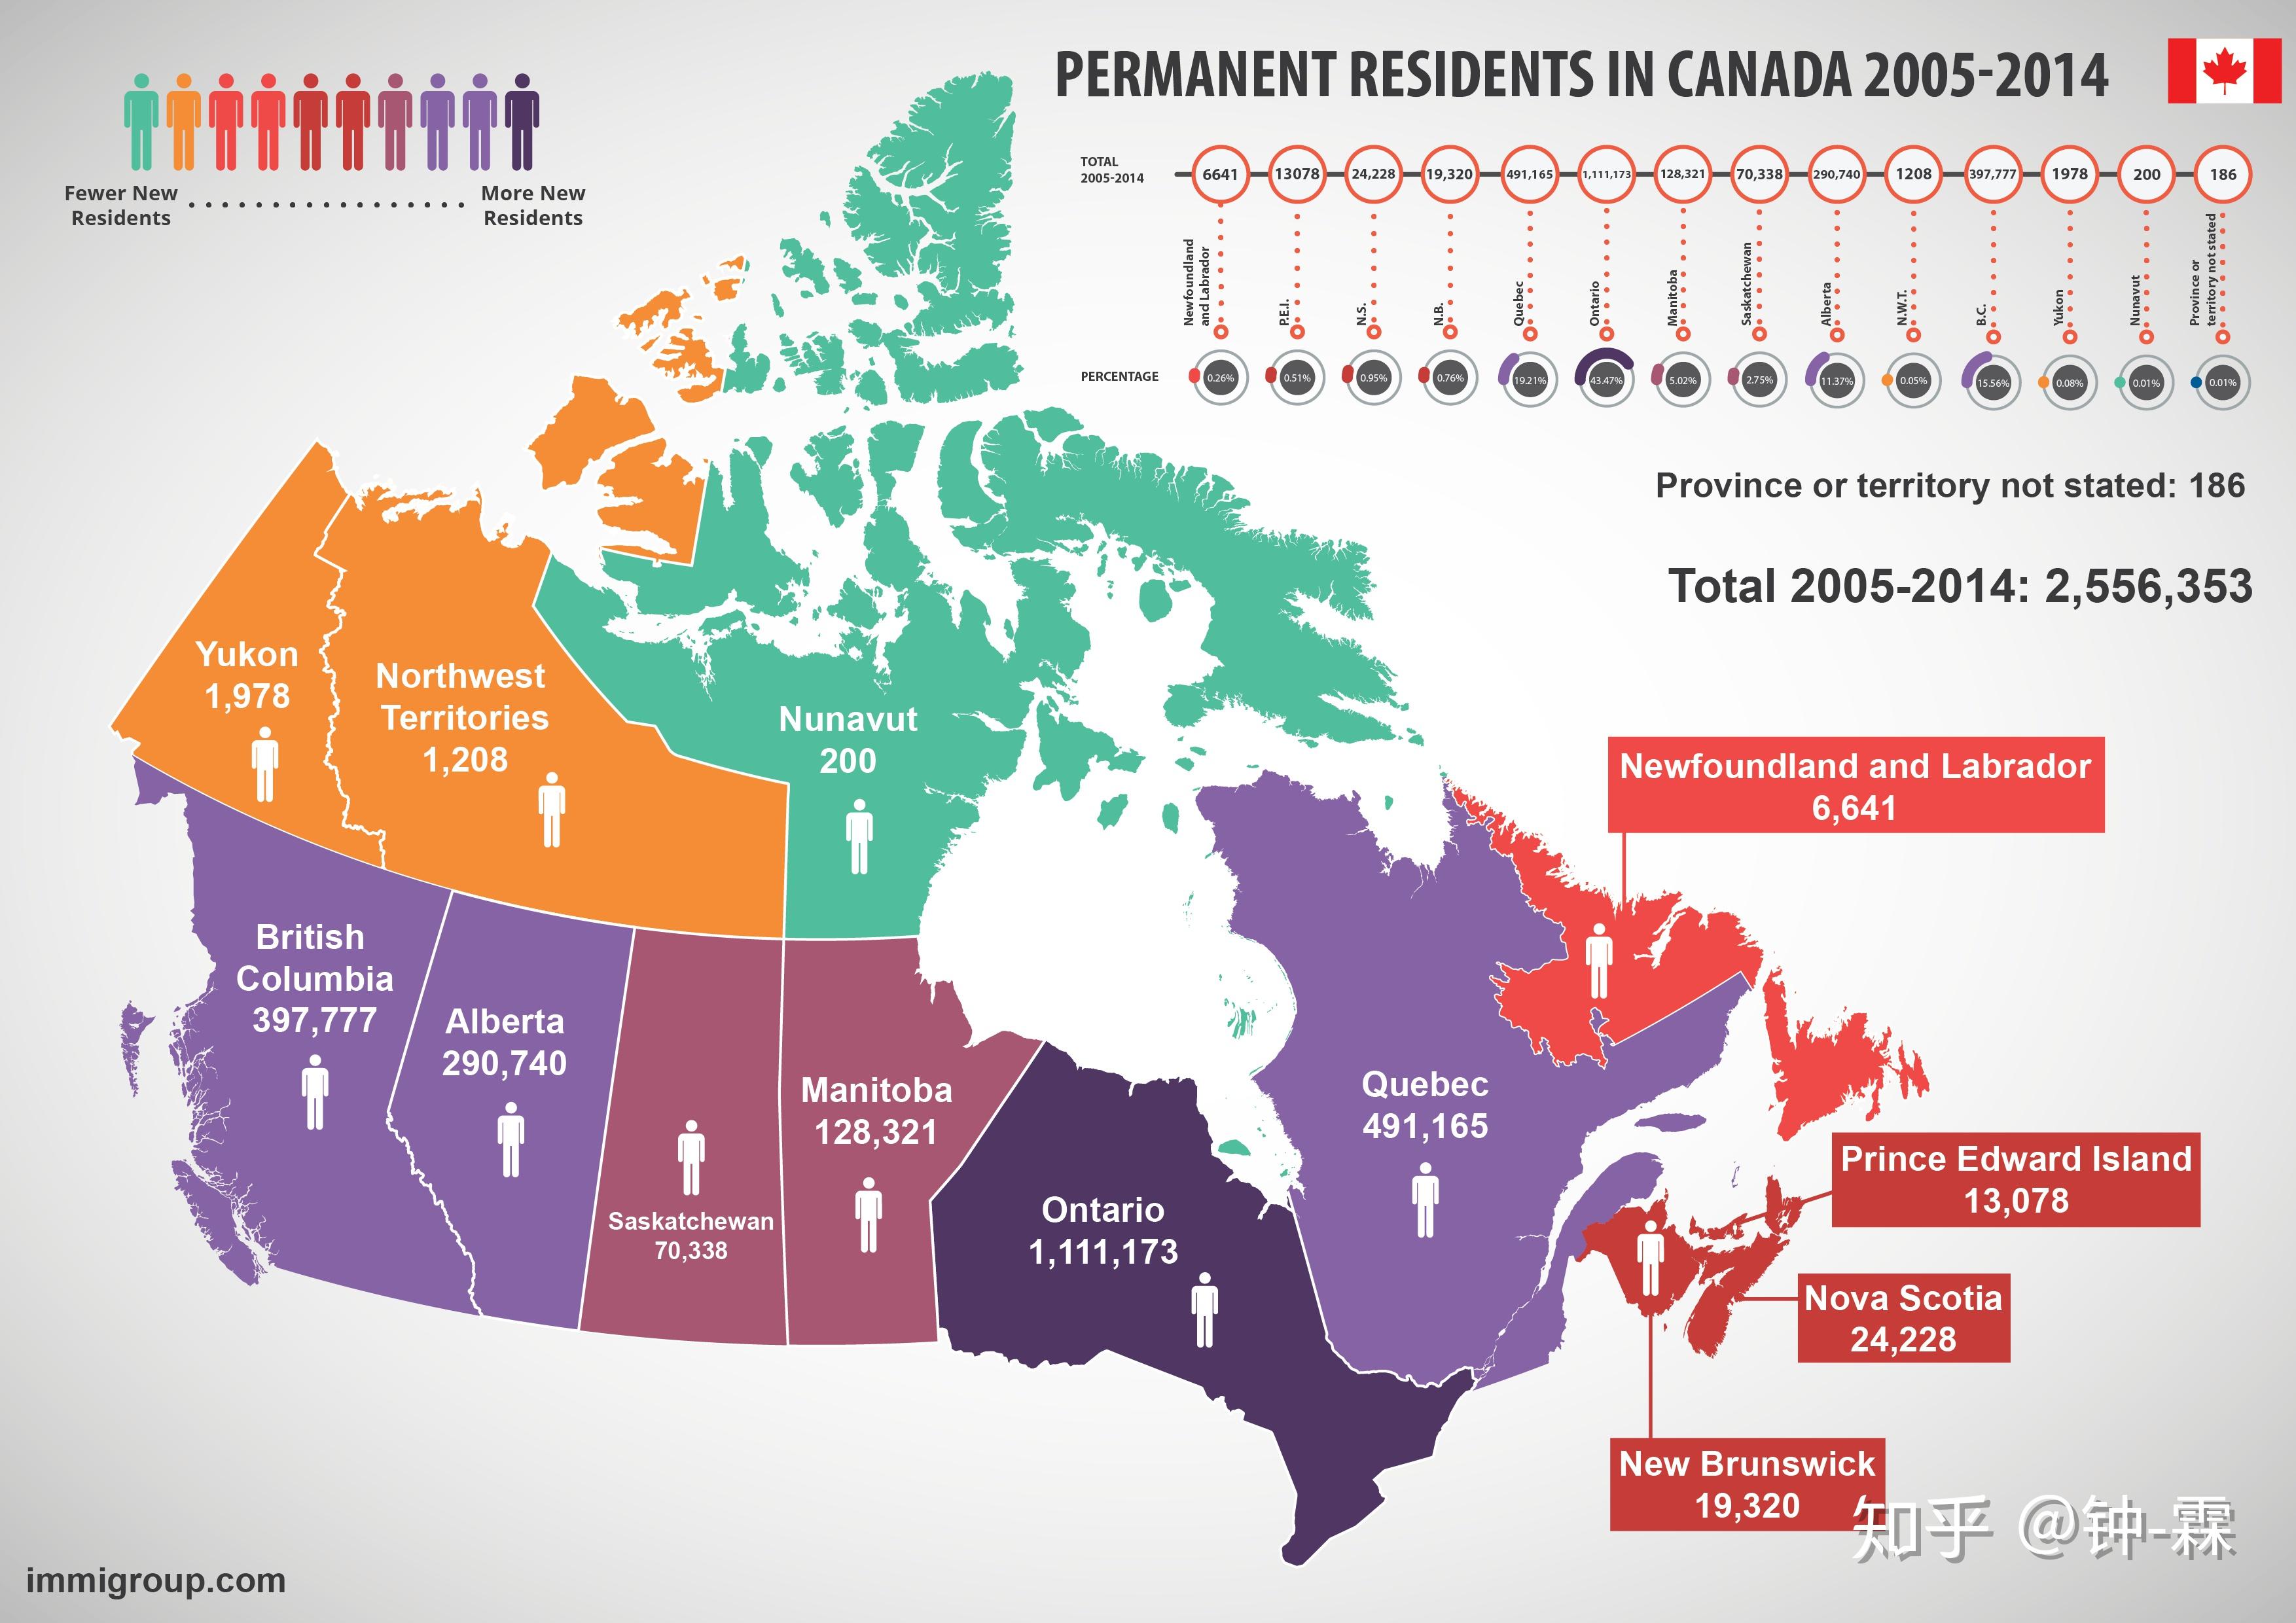 《美国新闻与世界报道》最近的一项调查显示,加拿大的生活质量在全球